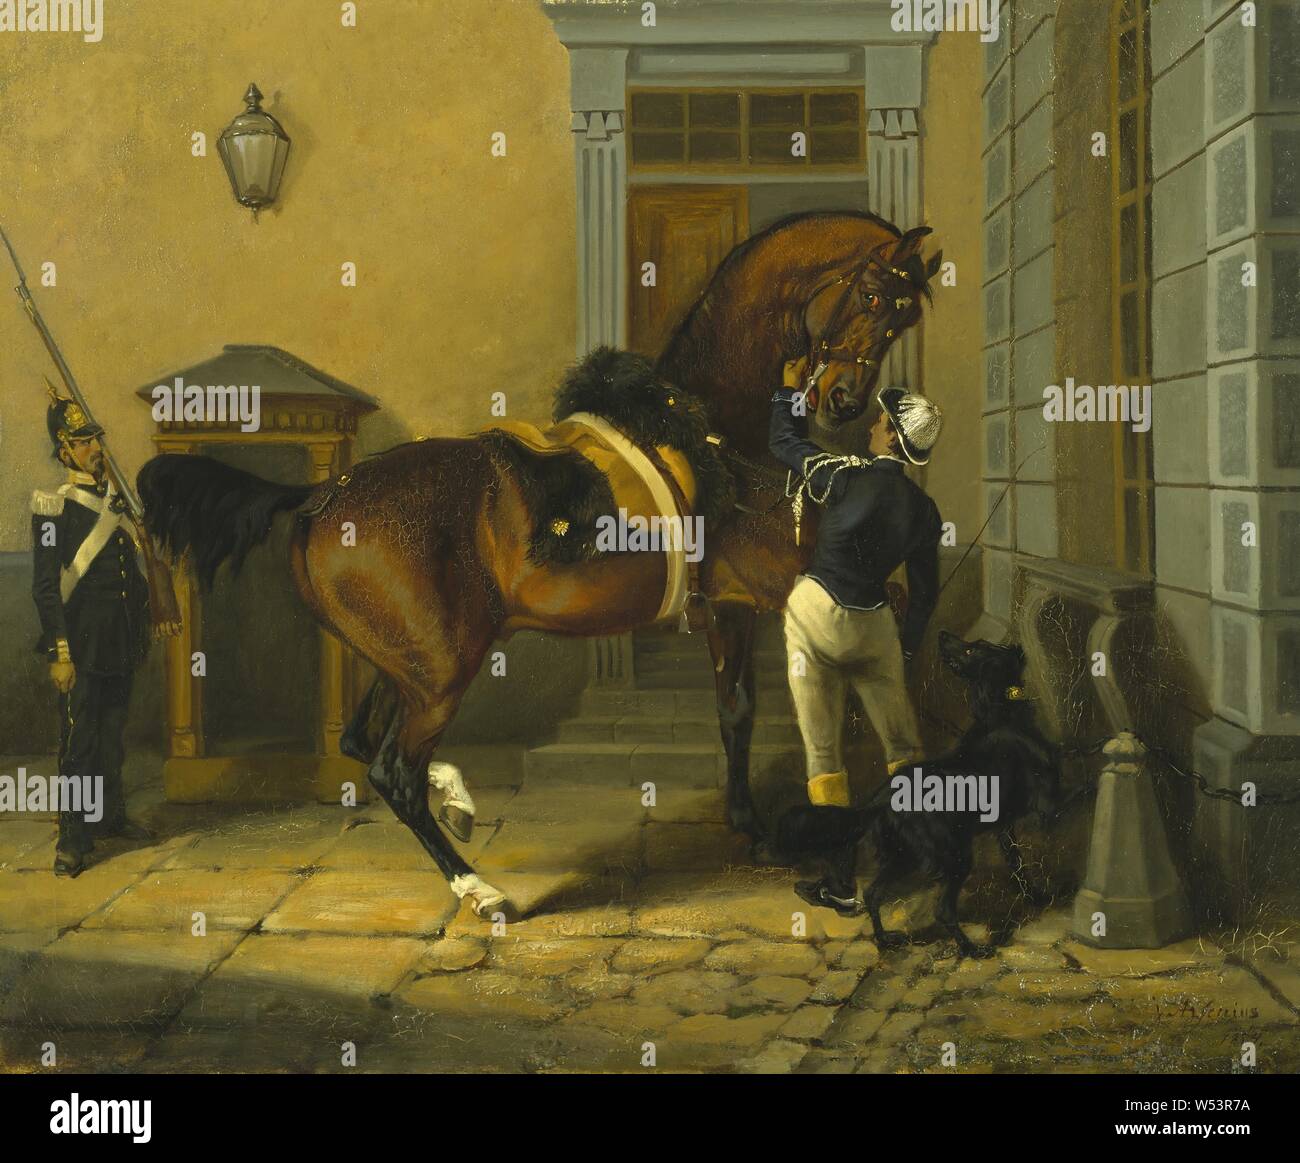 Johan (John) Georg Arsenius, gentilhomme, le cheval préféré du roi Carl XV de Suède, Carl XV, cheval préféré Gentleman, peinture, 1854, huile sur toile, 59,5 cm, hauteur 23,4 cm (largeur), 71 cm (27,9 pouces,), signé J. Arsenius, 1854 Banque D'Images